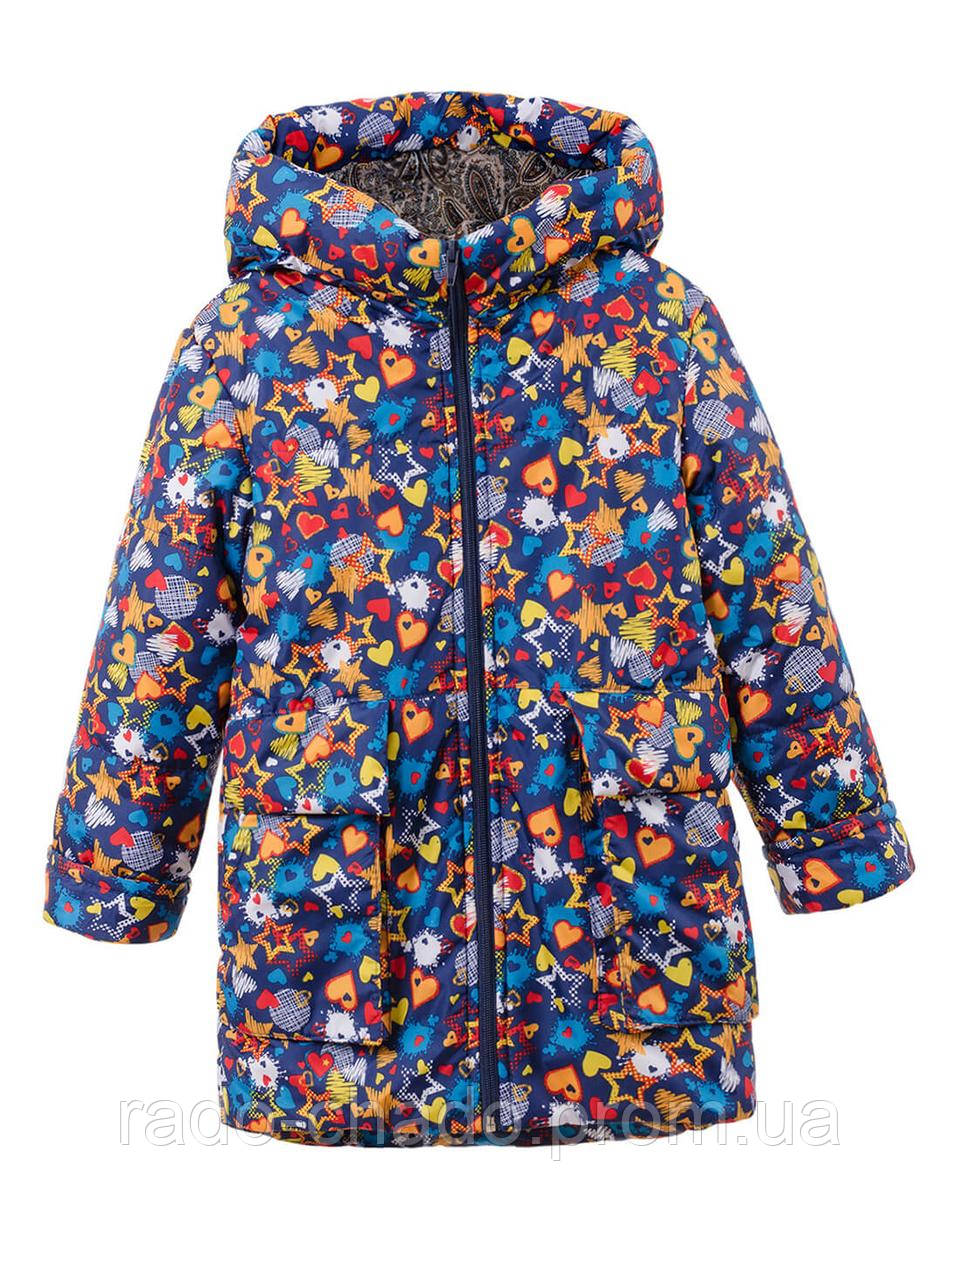 Демісезонна подовжена тепла курточка "Зірочка" для дівчаток весна-осінь 104-116 